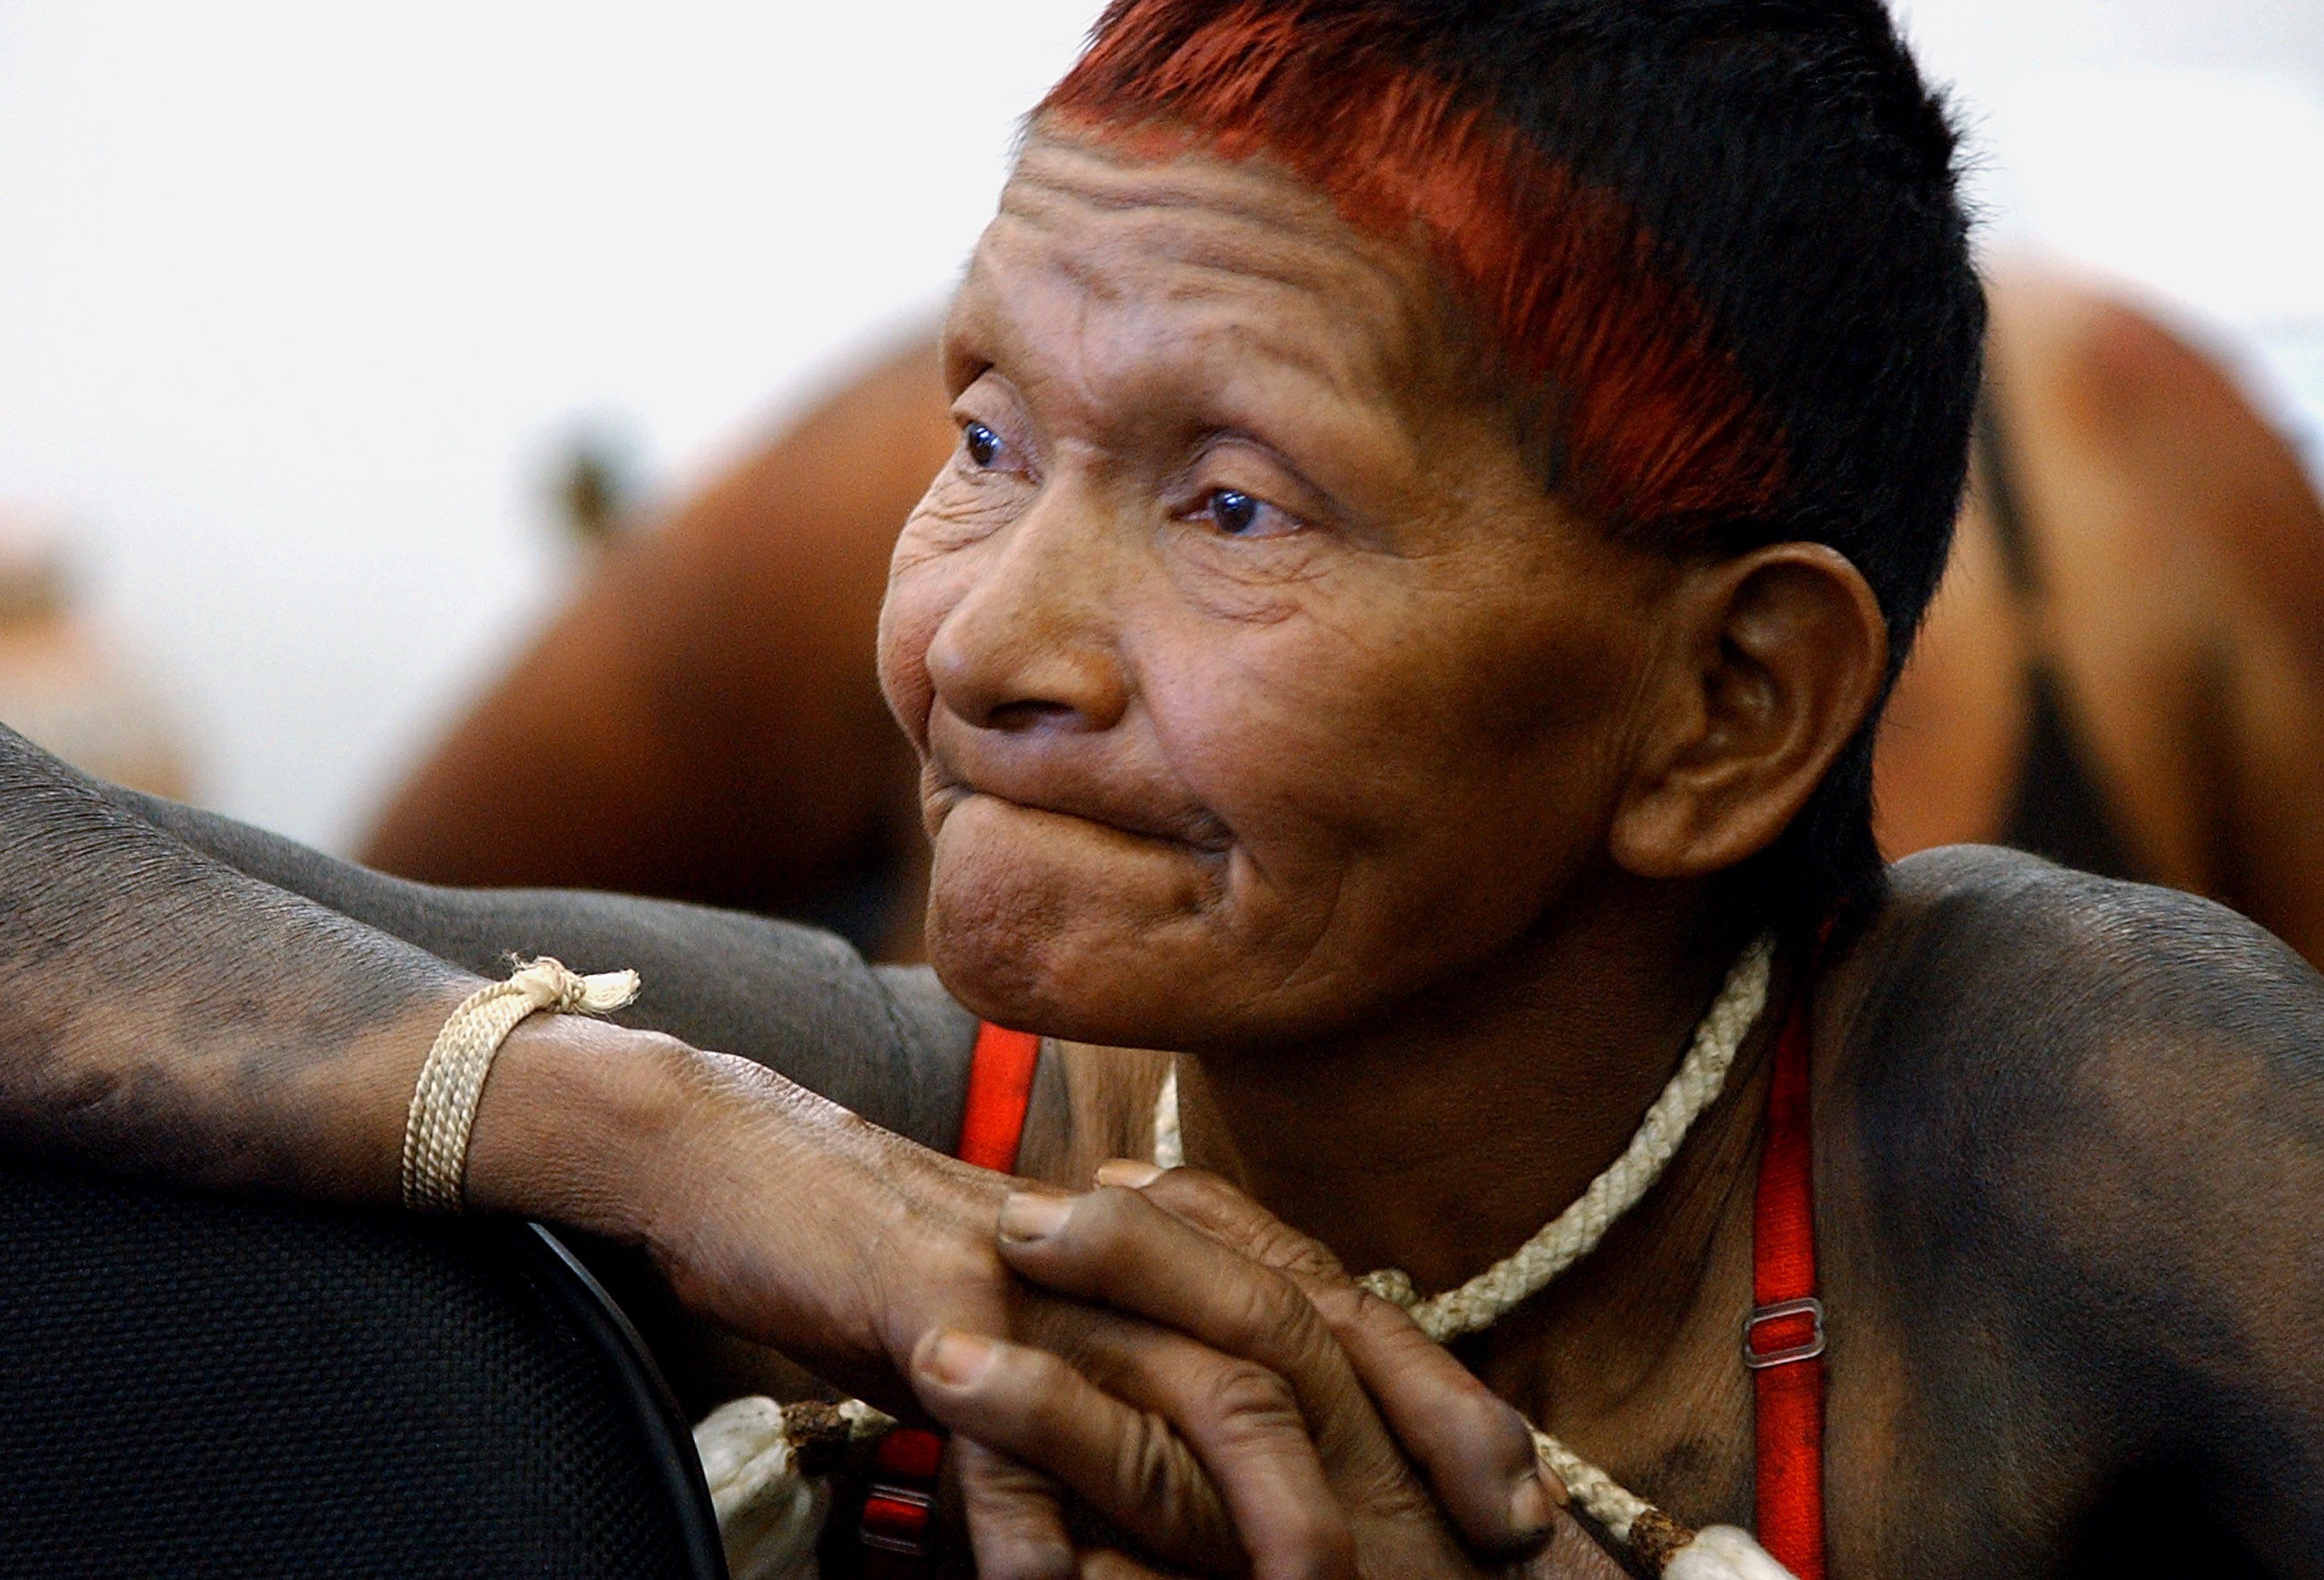 Nativos da América do Sul têm influência genética de povos do Pacífico. Acima: mulher do povo Xavante, nativo do planalto brasileiro (Foto: Wikimedia Commons)